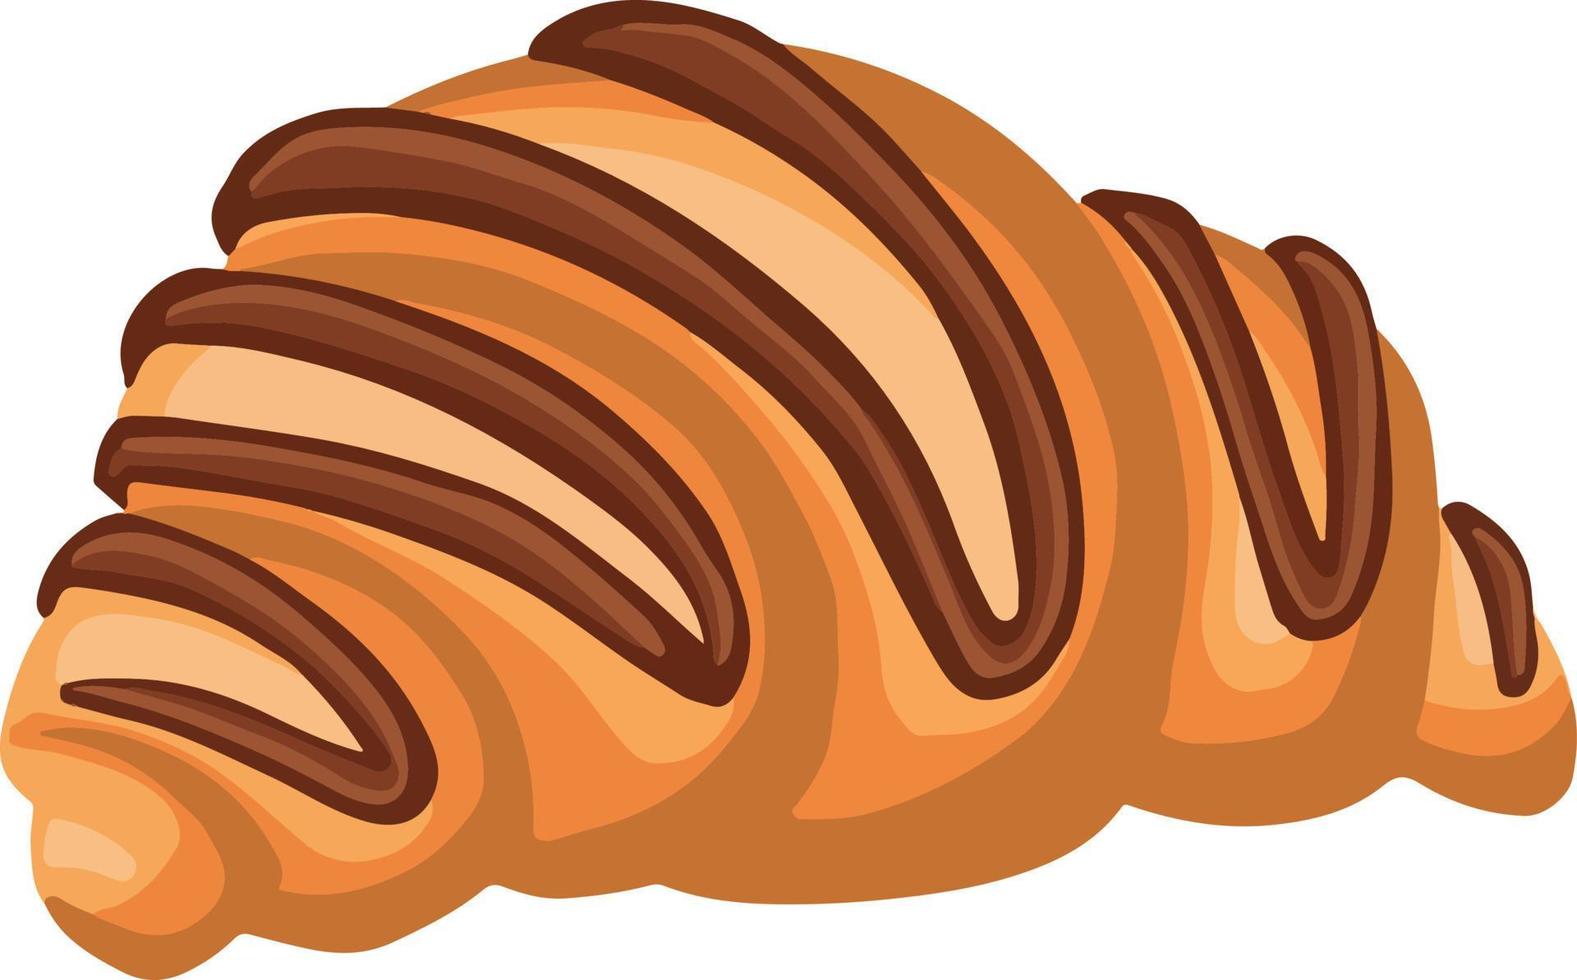 croissant con chocolate, postre de pastel, ilustración dibujada a mano vector